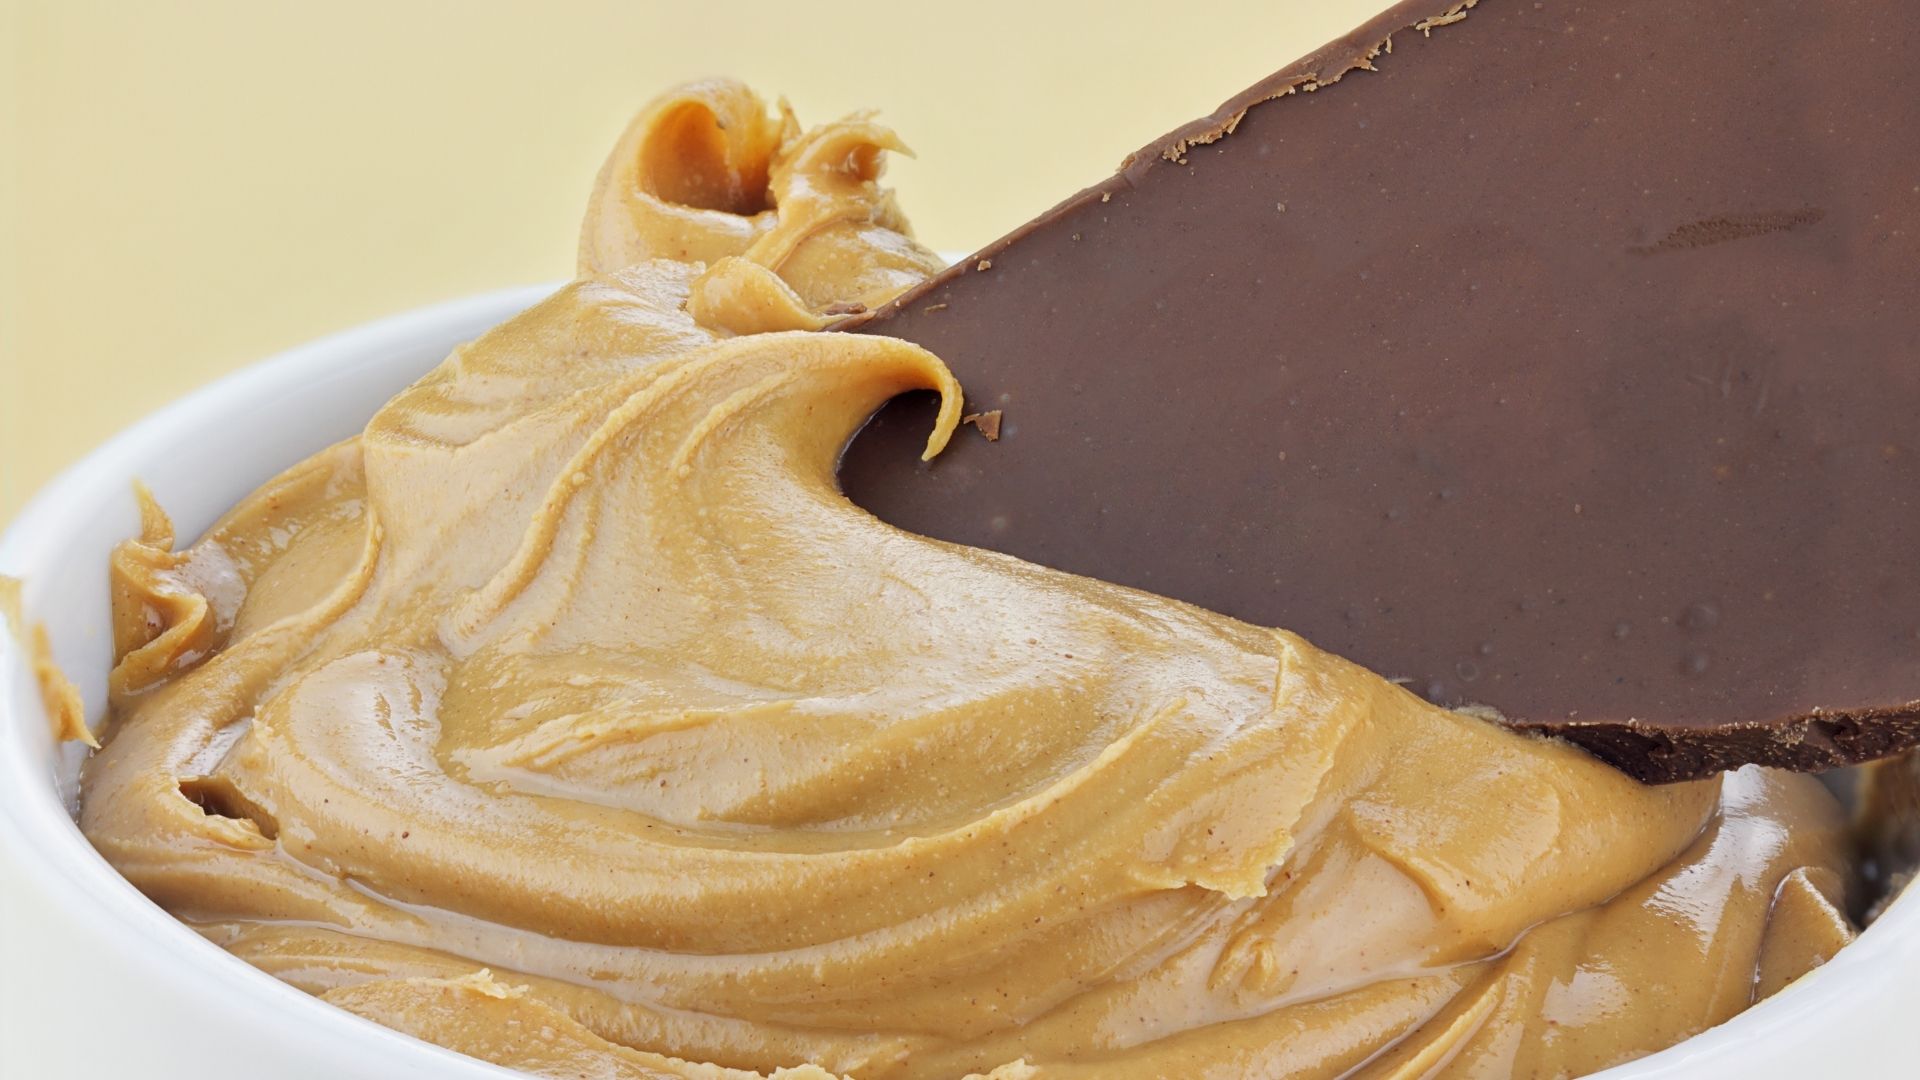 Perfect matches: Peanut butter & chocolate, cookies & milk, WrkSpot & ...WrkSpot